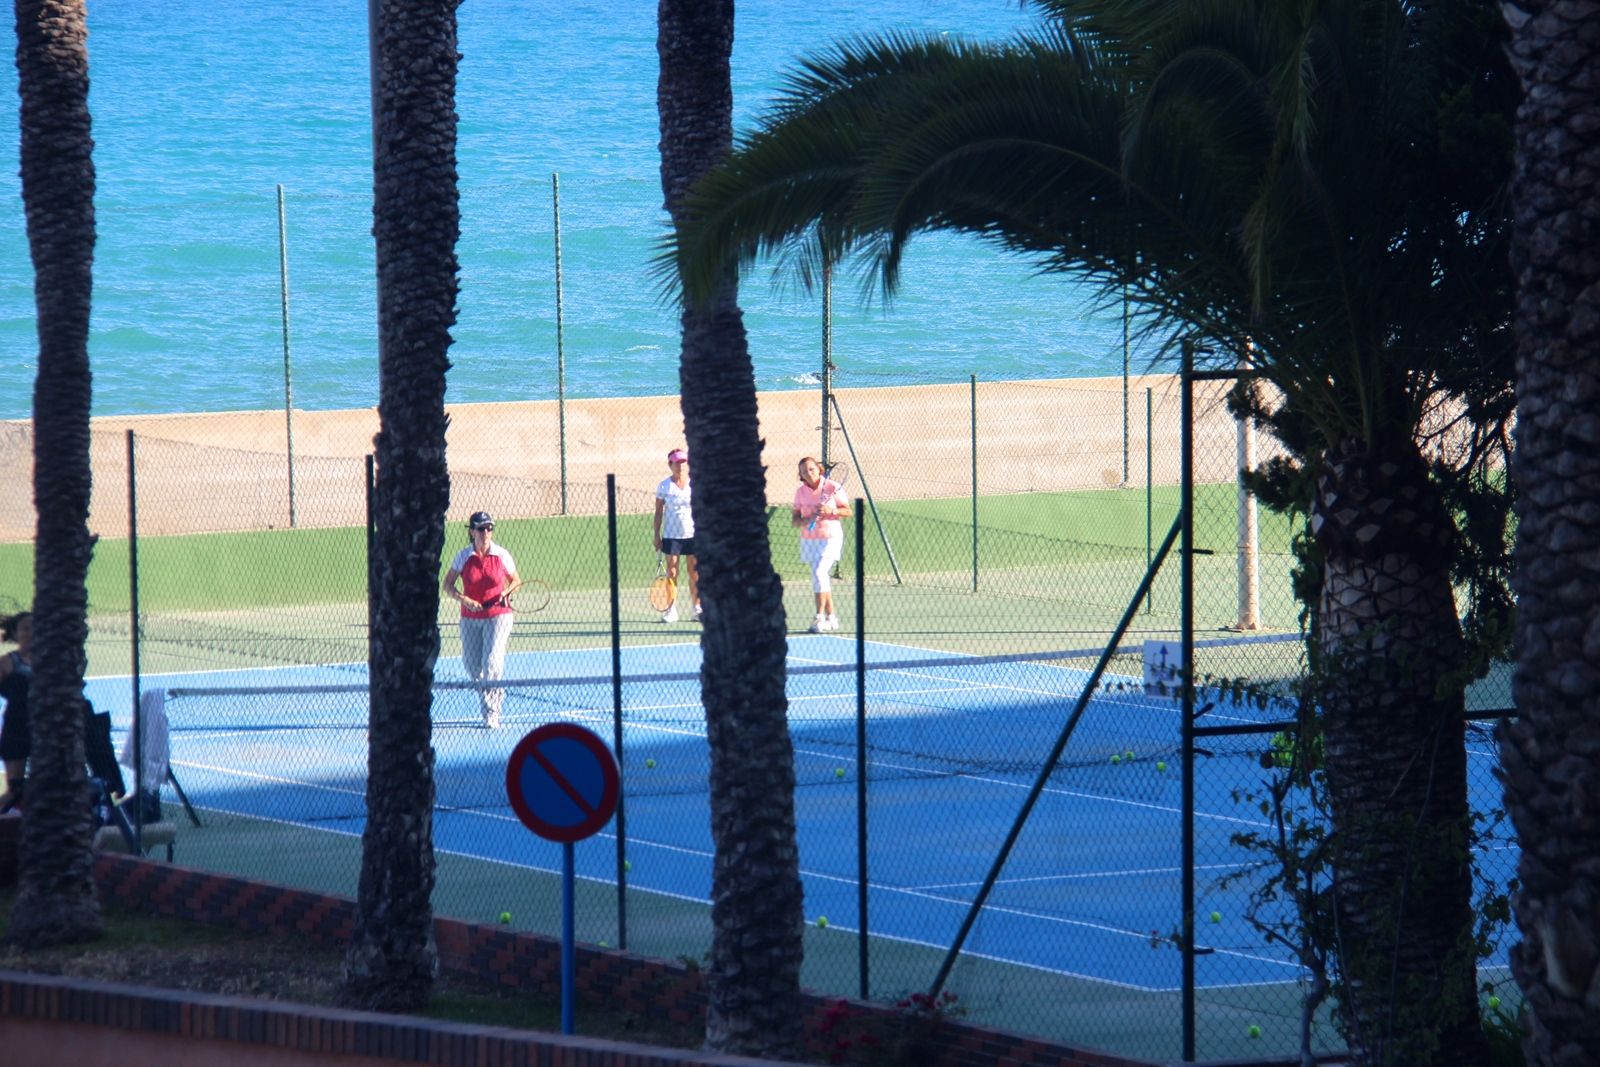 tennis-tourist-best-western-albahia-alicante-spain-tennis-courts-through-trees-teri-church